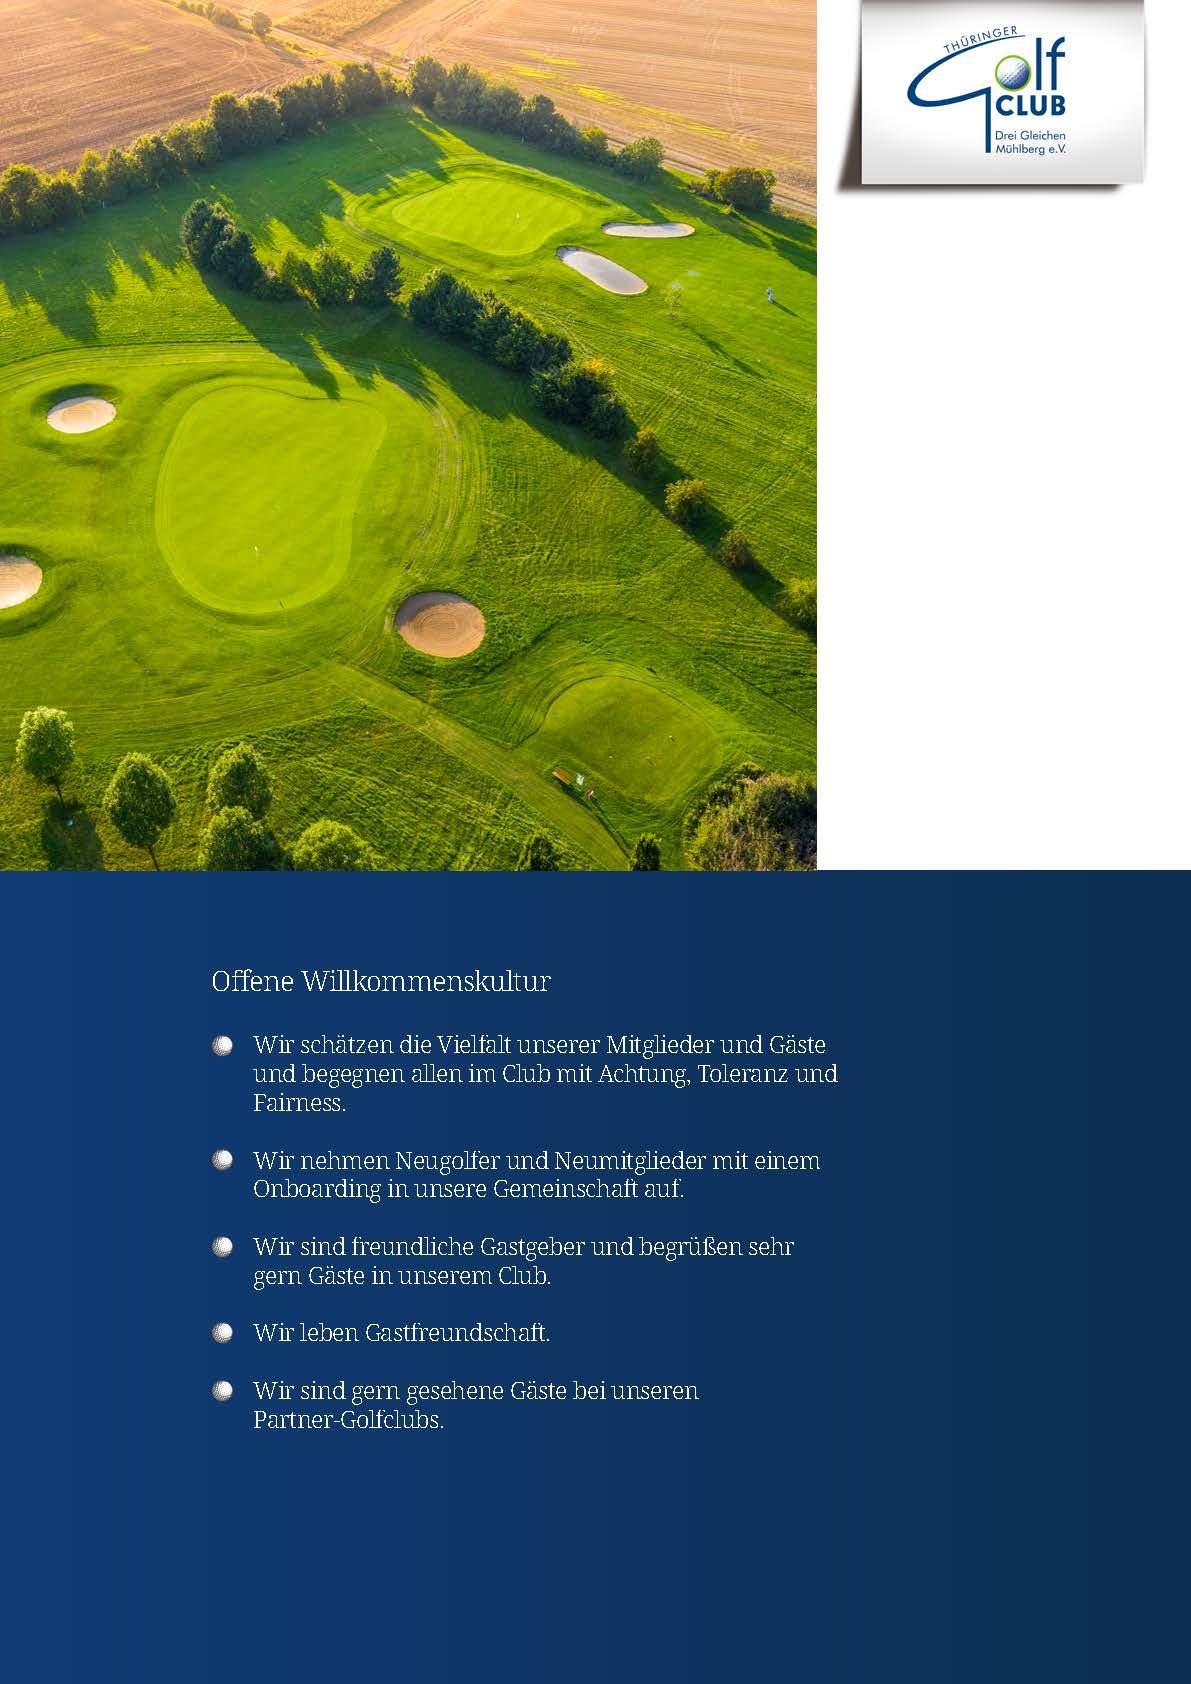 Golfclub_Leitbild_Homepage_Seite_10